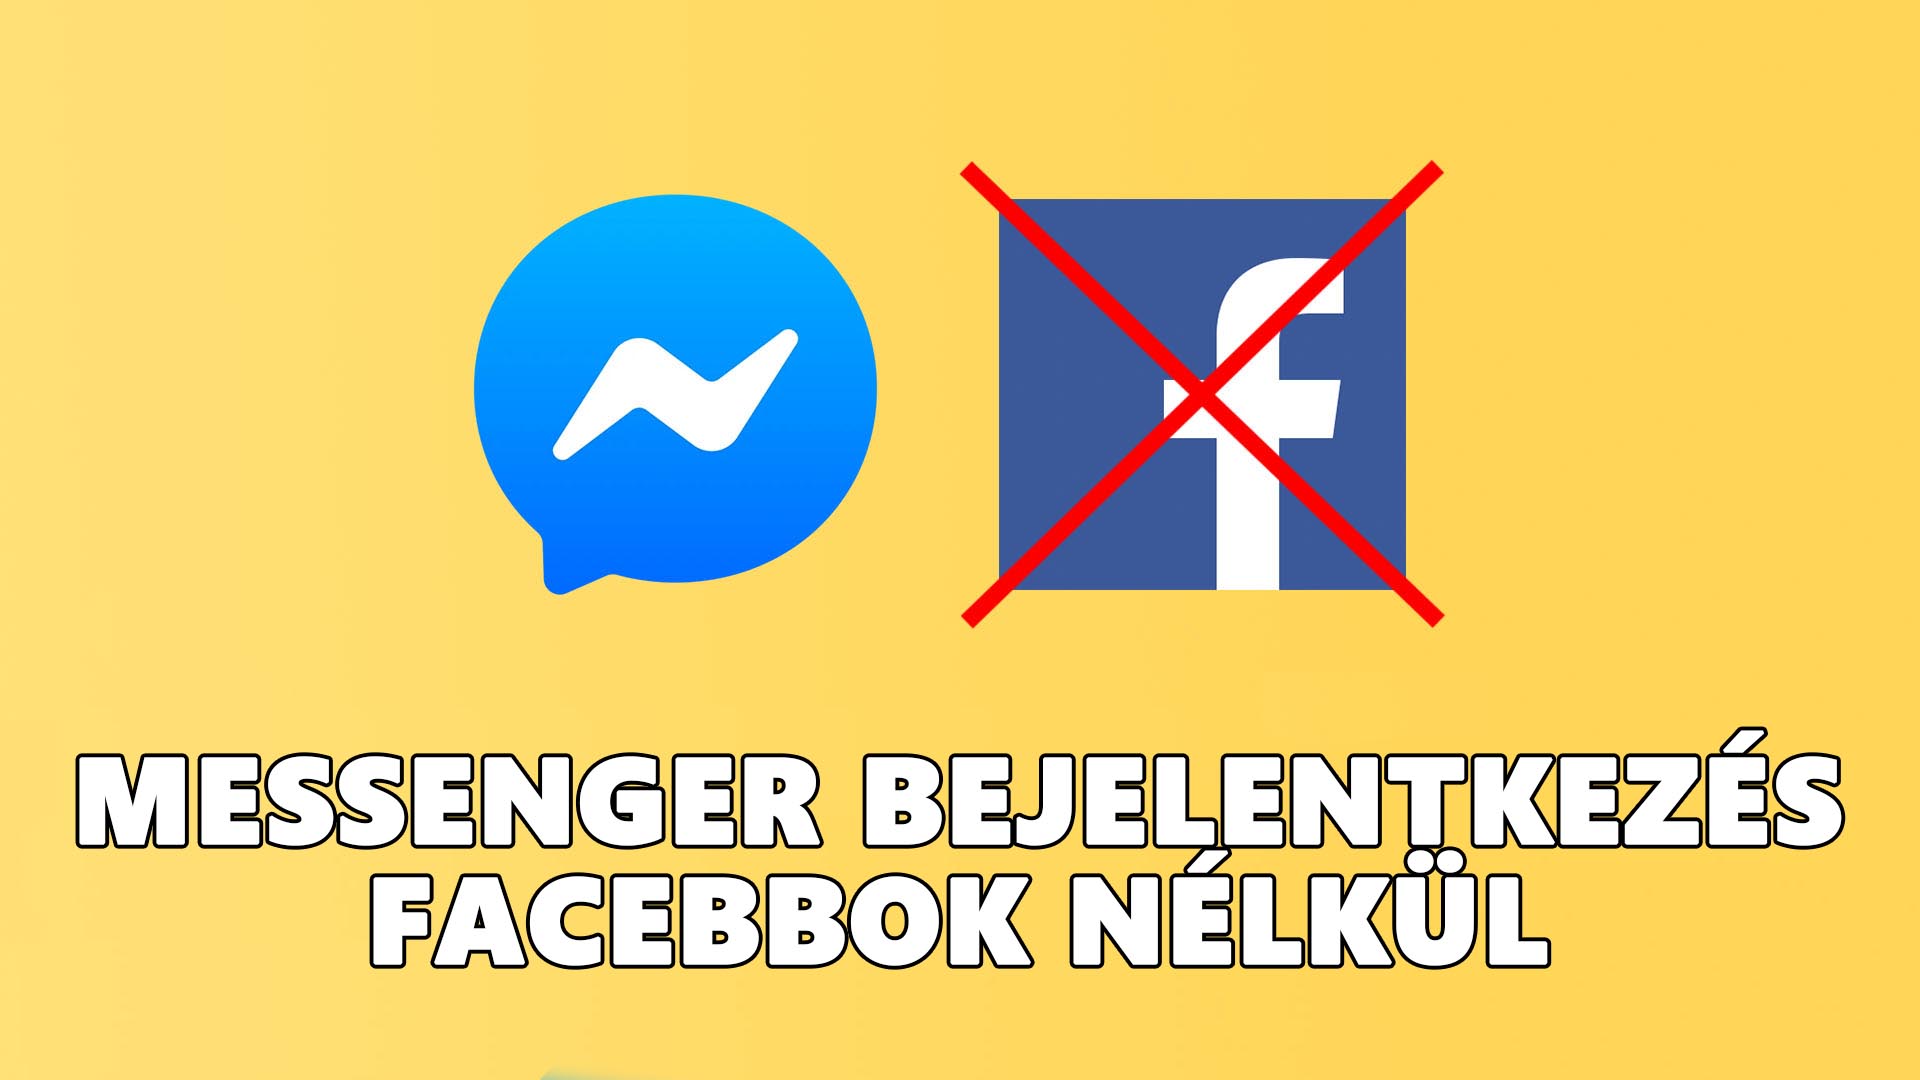 Messenger belépés, bejelentkezés Facebook nélkül cikk nyitóképe, borítóképe